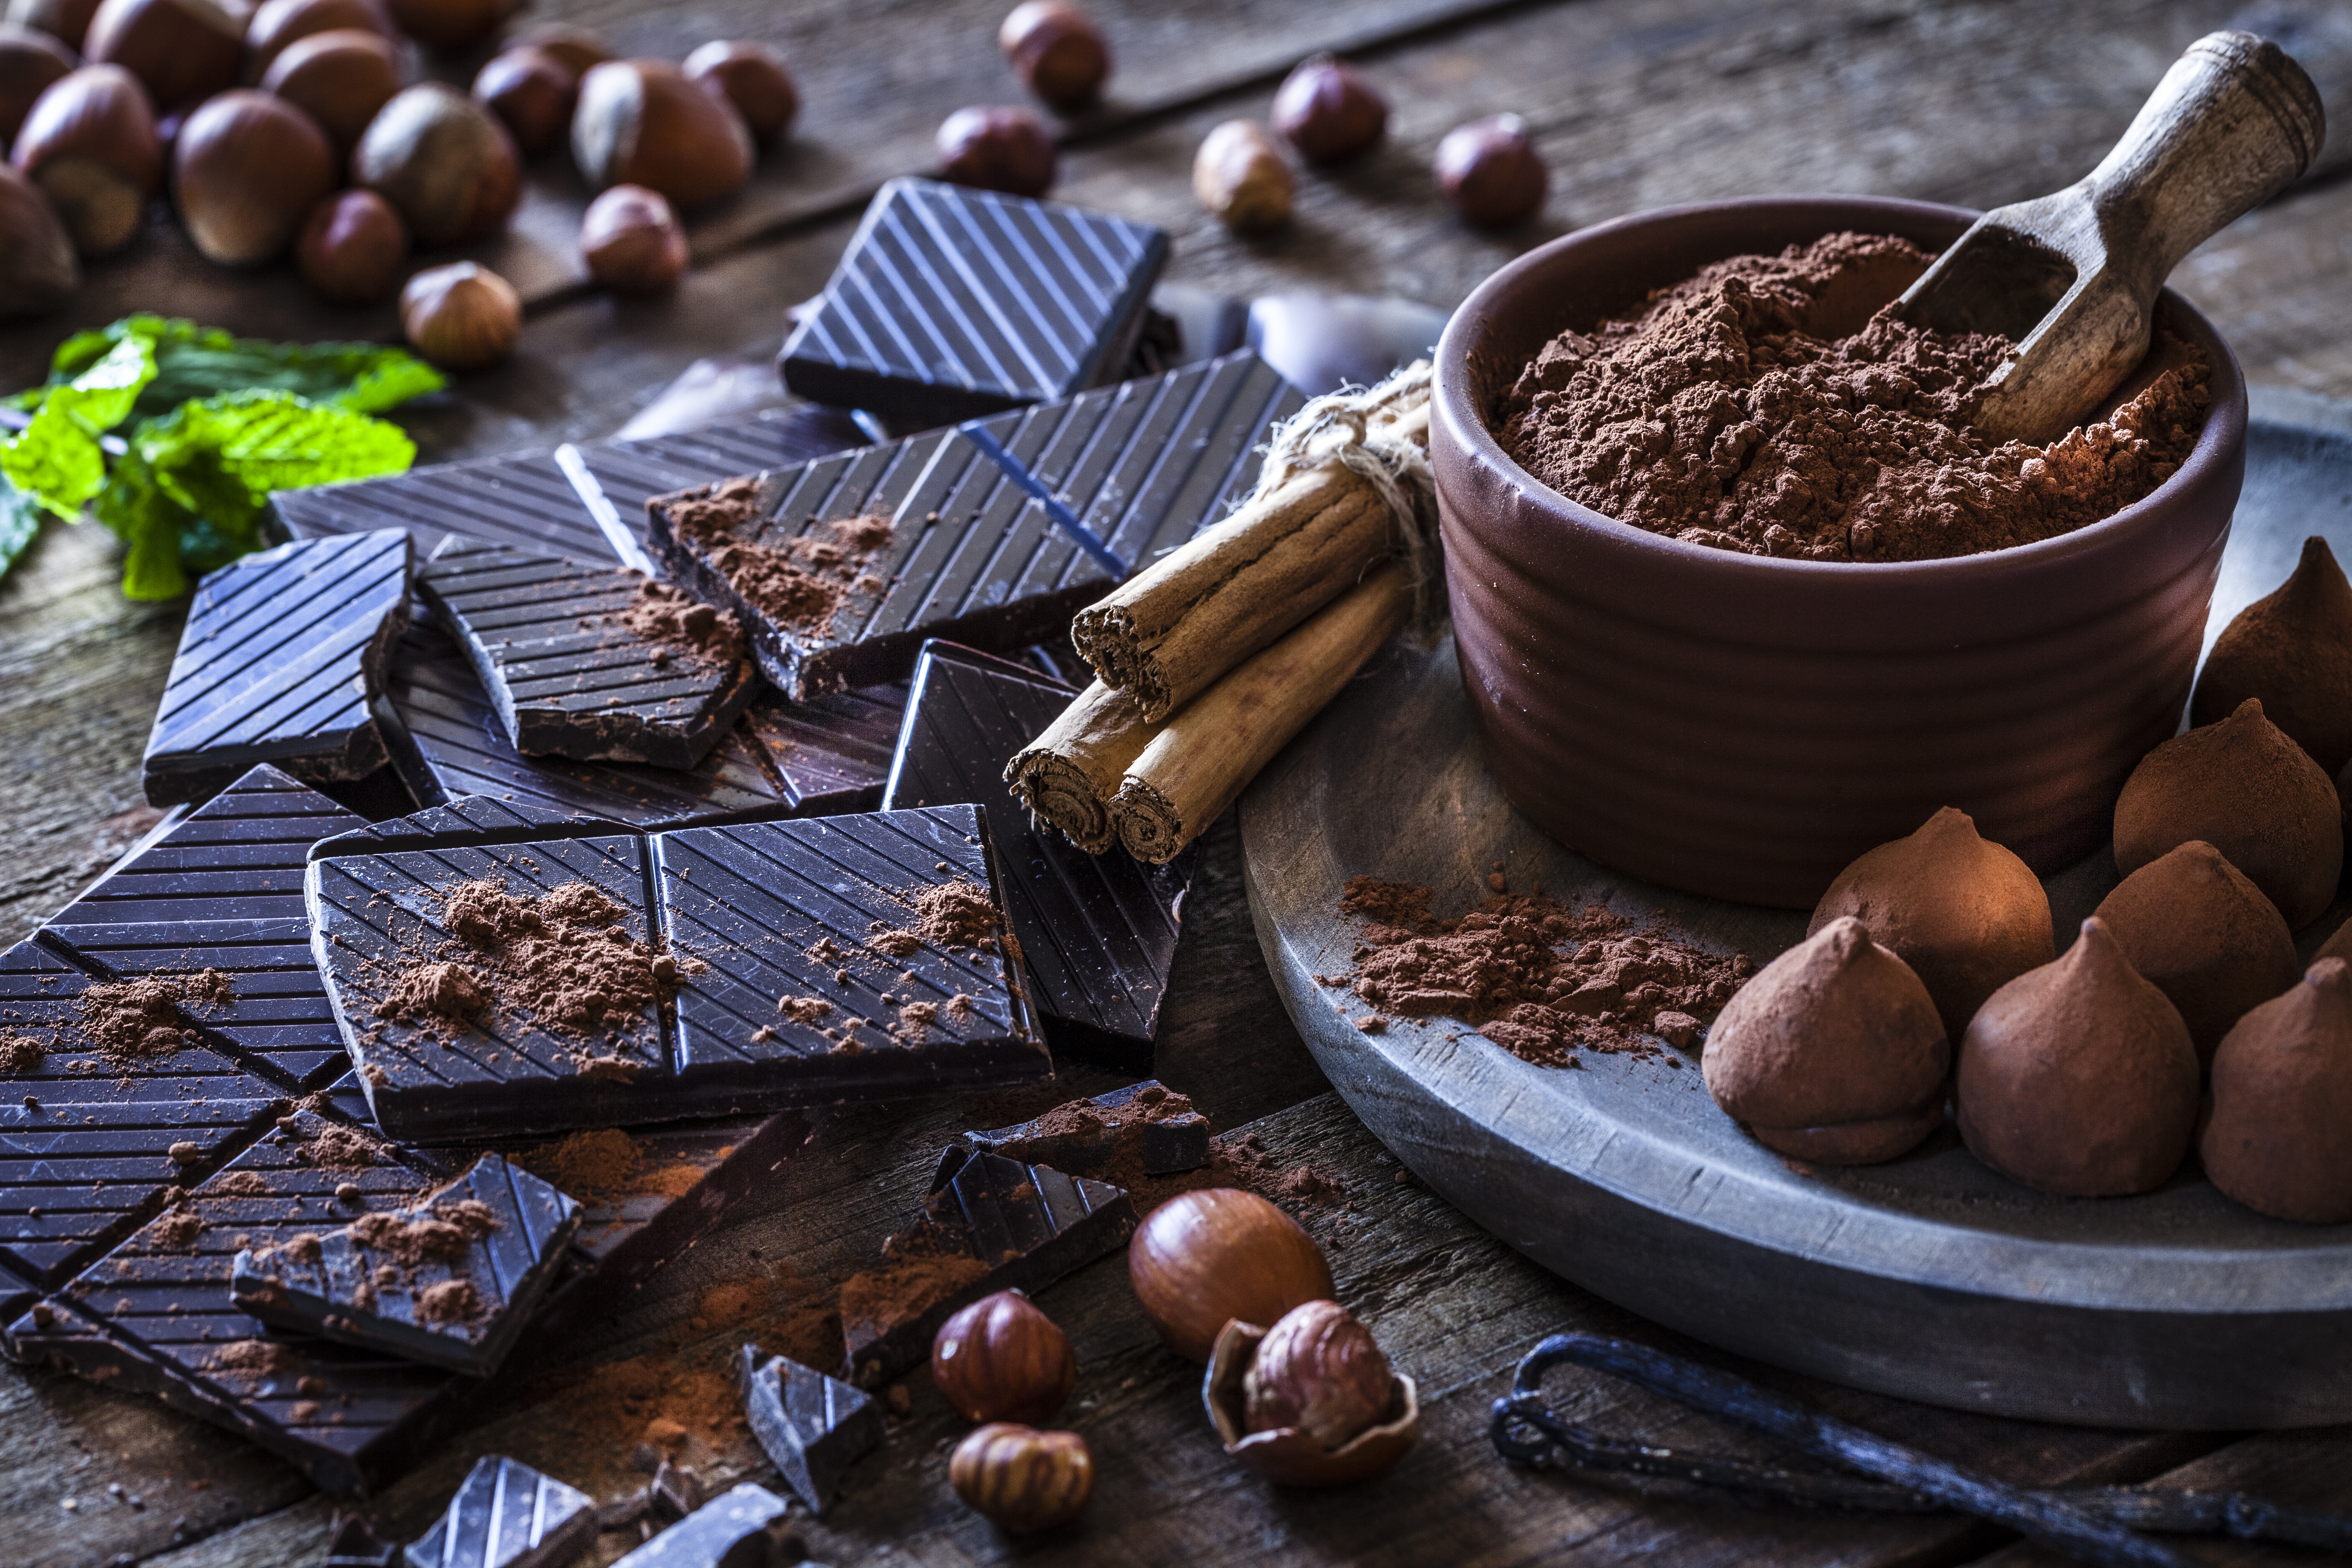 <p><strong>7. Тъмен шоколад</strong></p>

<p>Тъмният шоколад има по-високо съдържание на какао от обикновения или млечния шоколад. Доказано е, че антиоксидантите в какаото имат много ползи за здравето, като например увеличаване на притока на кръв в тялото. Този ефект подпомага доставката на кислород до мозъка и мускулите, което подобрява тяхната функция. Това може да бъде особено полезно по време на физически упражнения.</p>